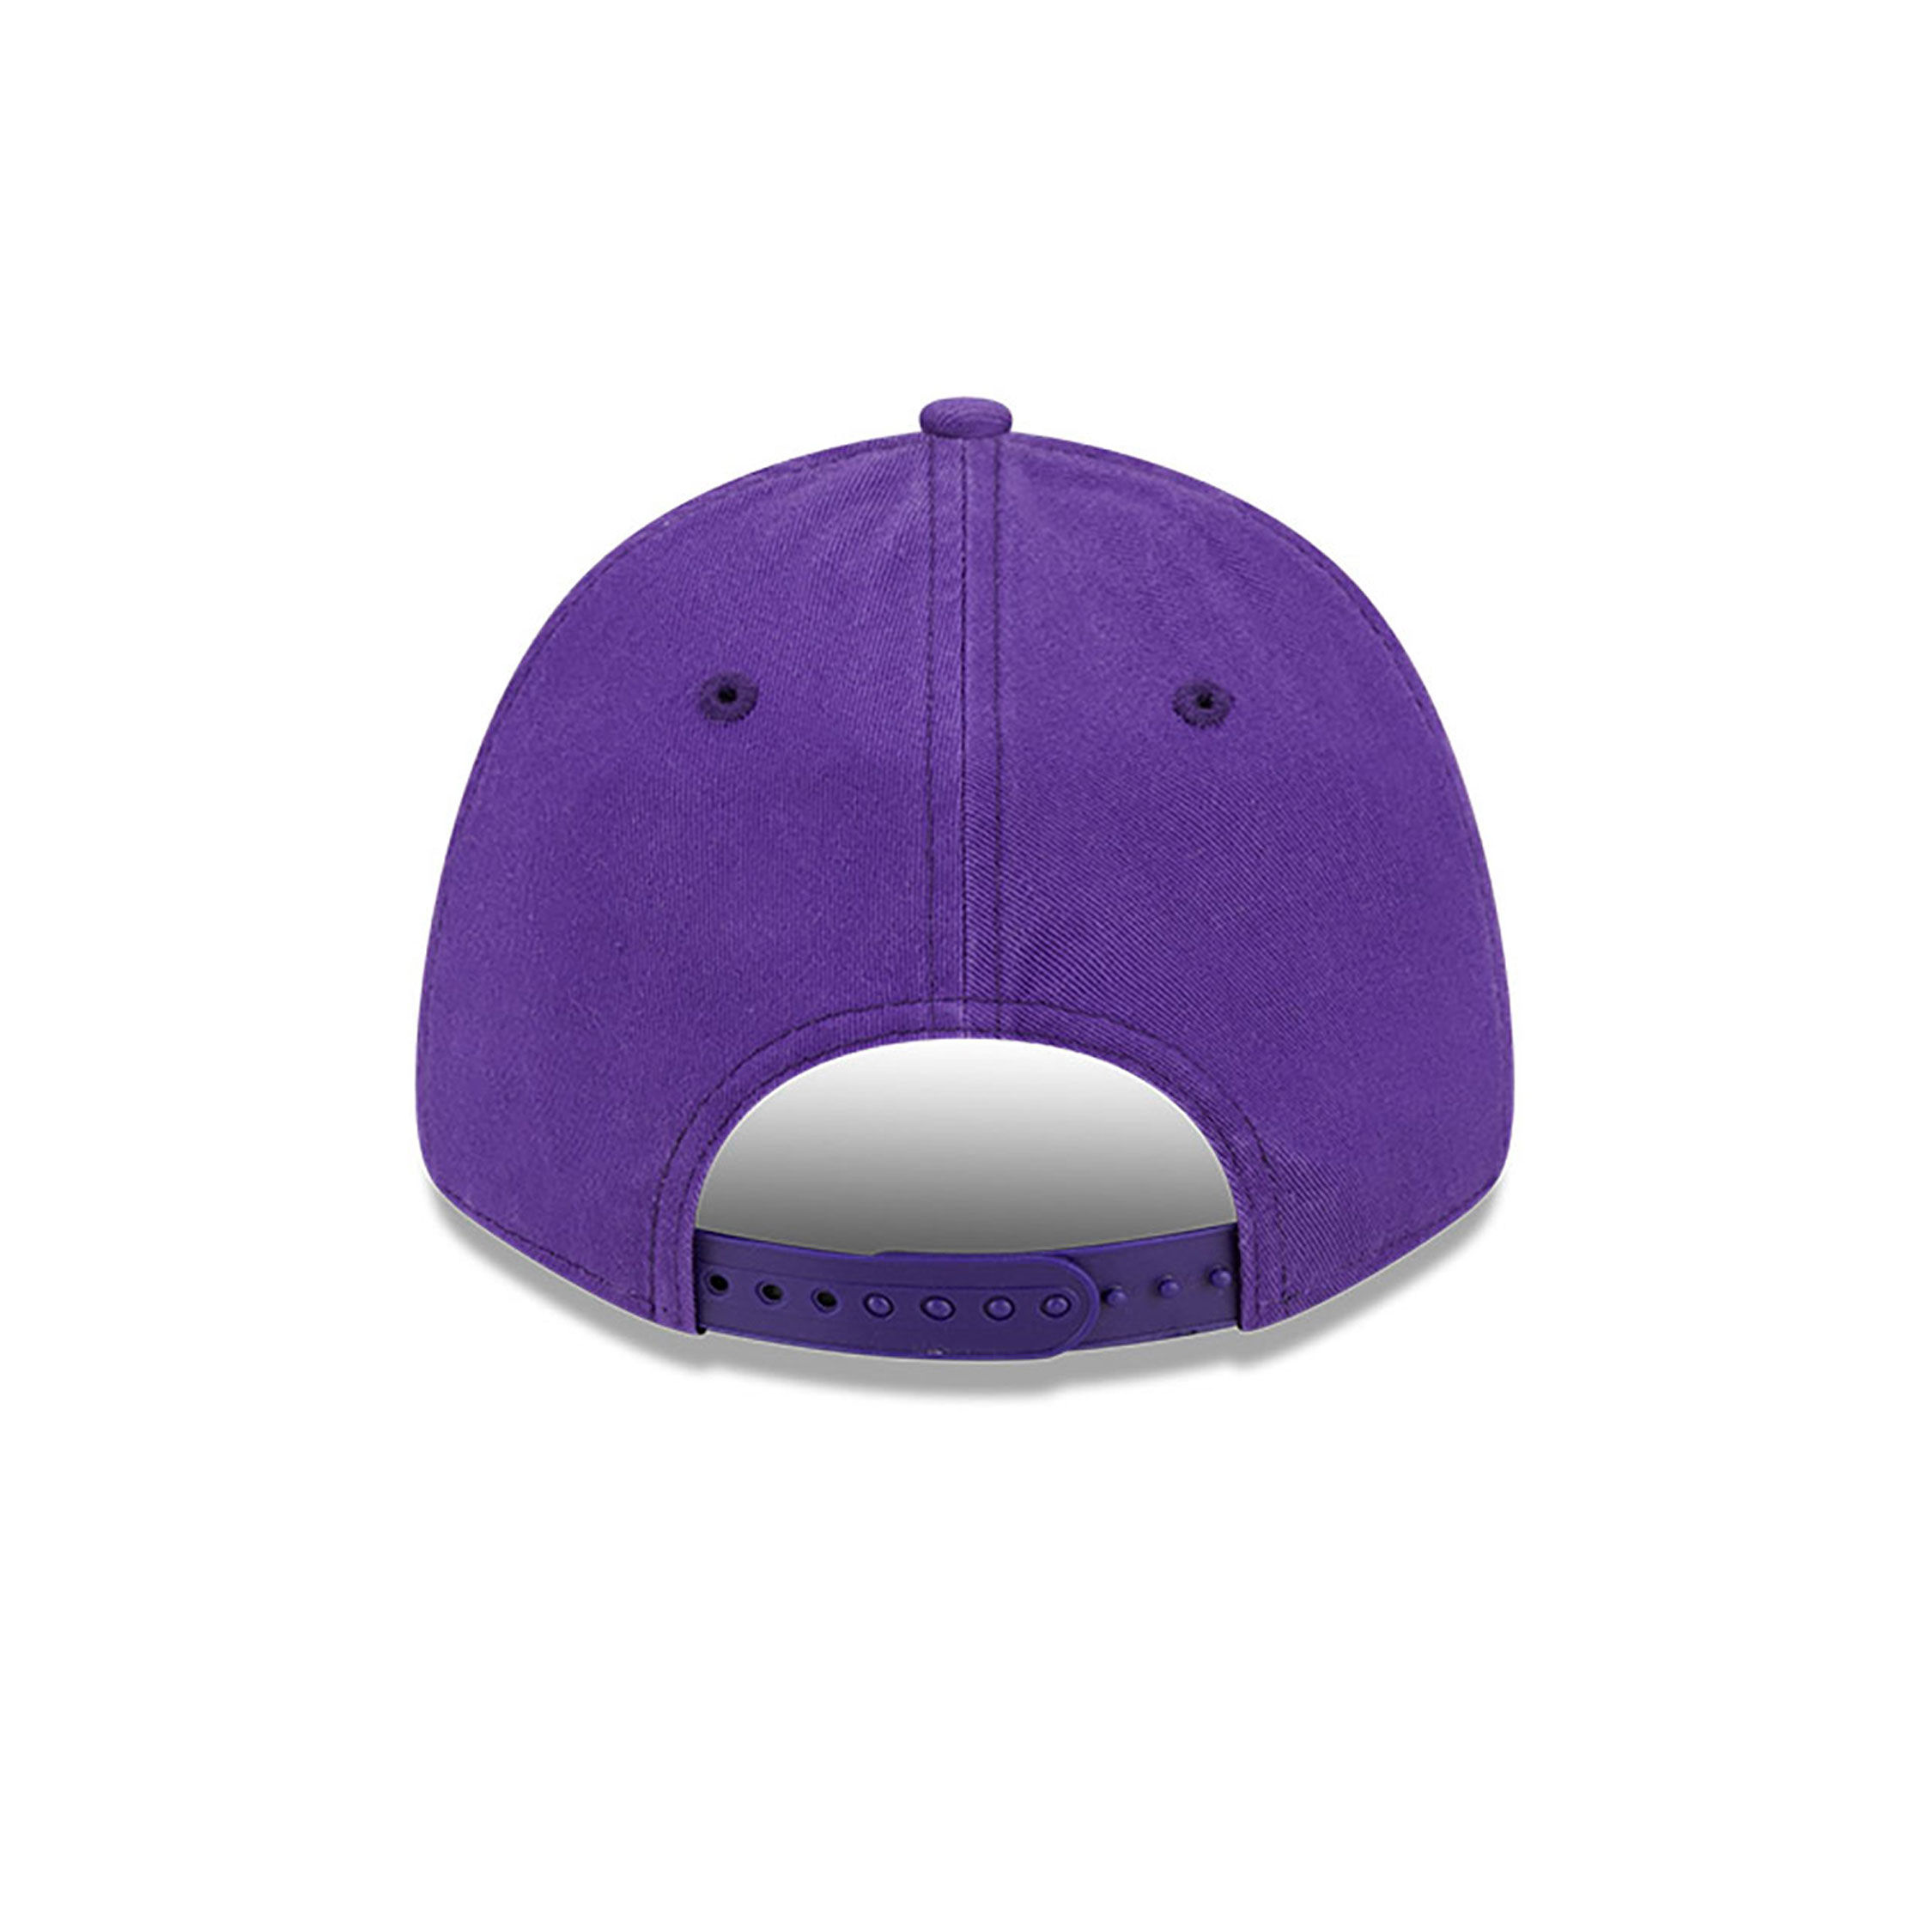 Minnesota Vikings NFL Purple 9FORTY Adjustable Cap